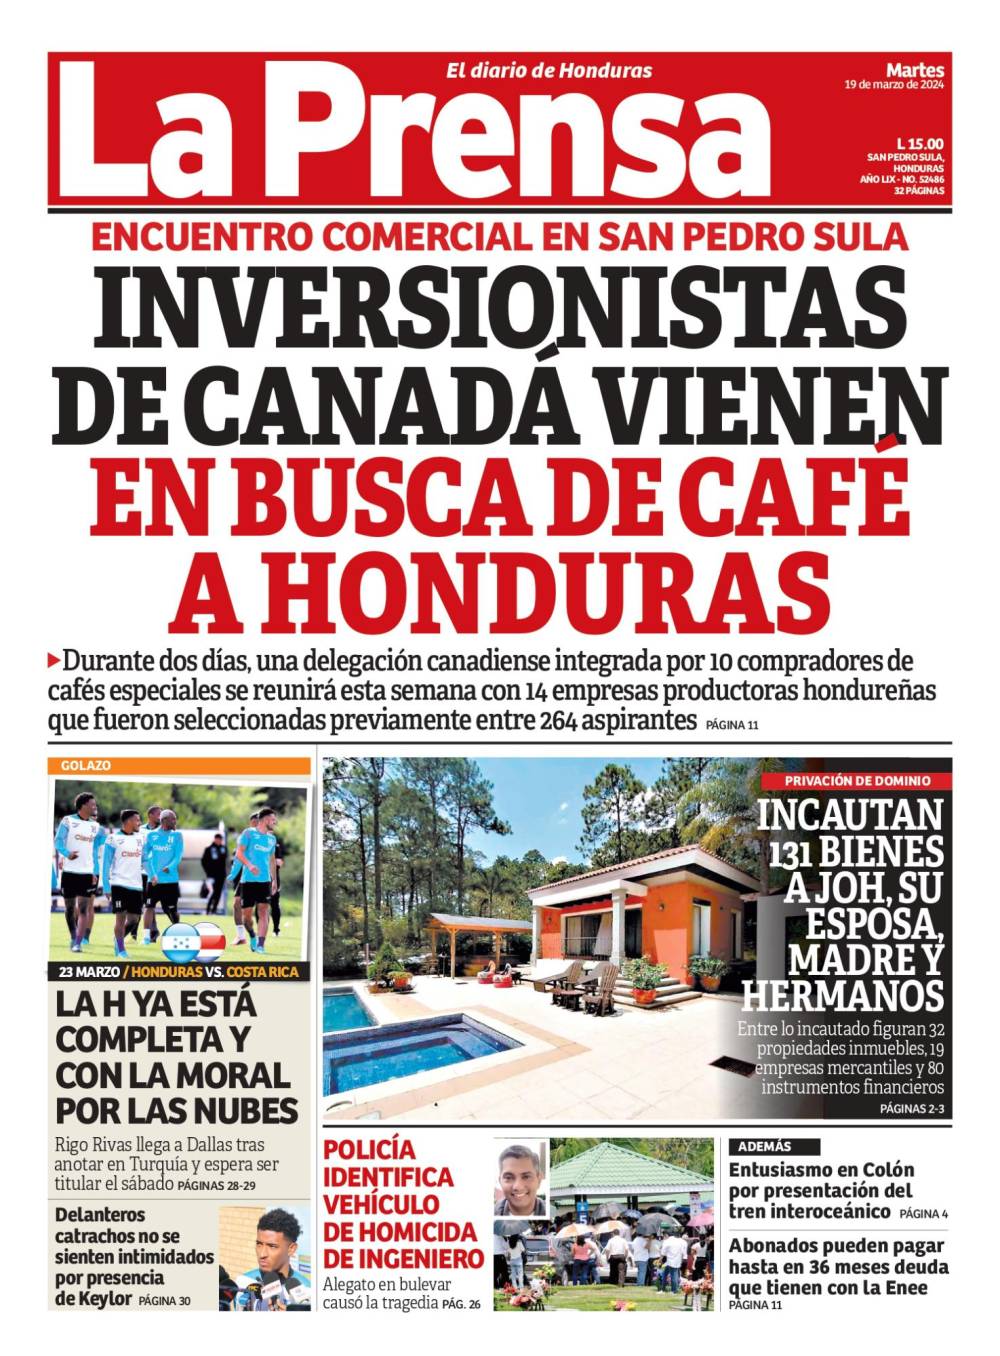 Inversionistas de Canadá vienen en busca de café a Honduras